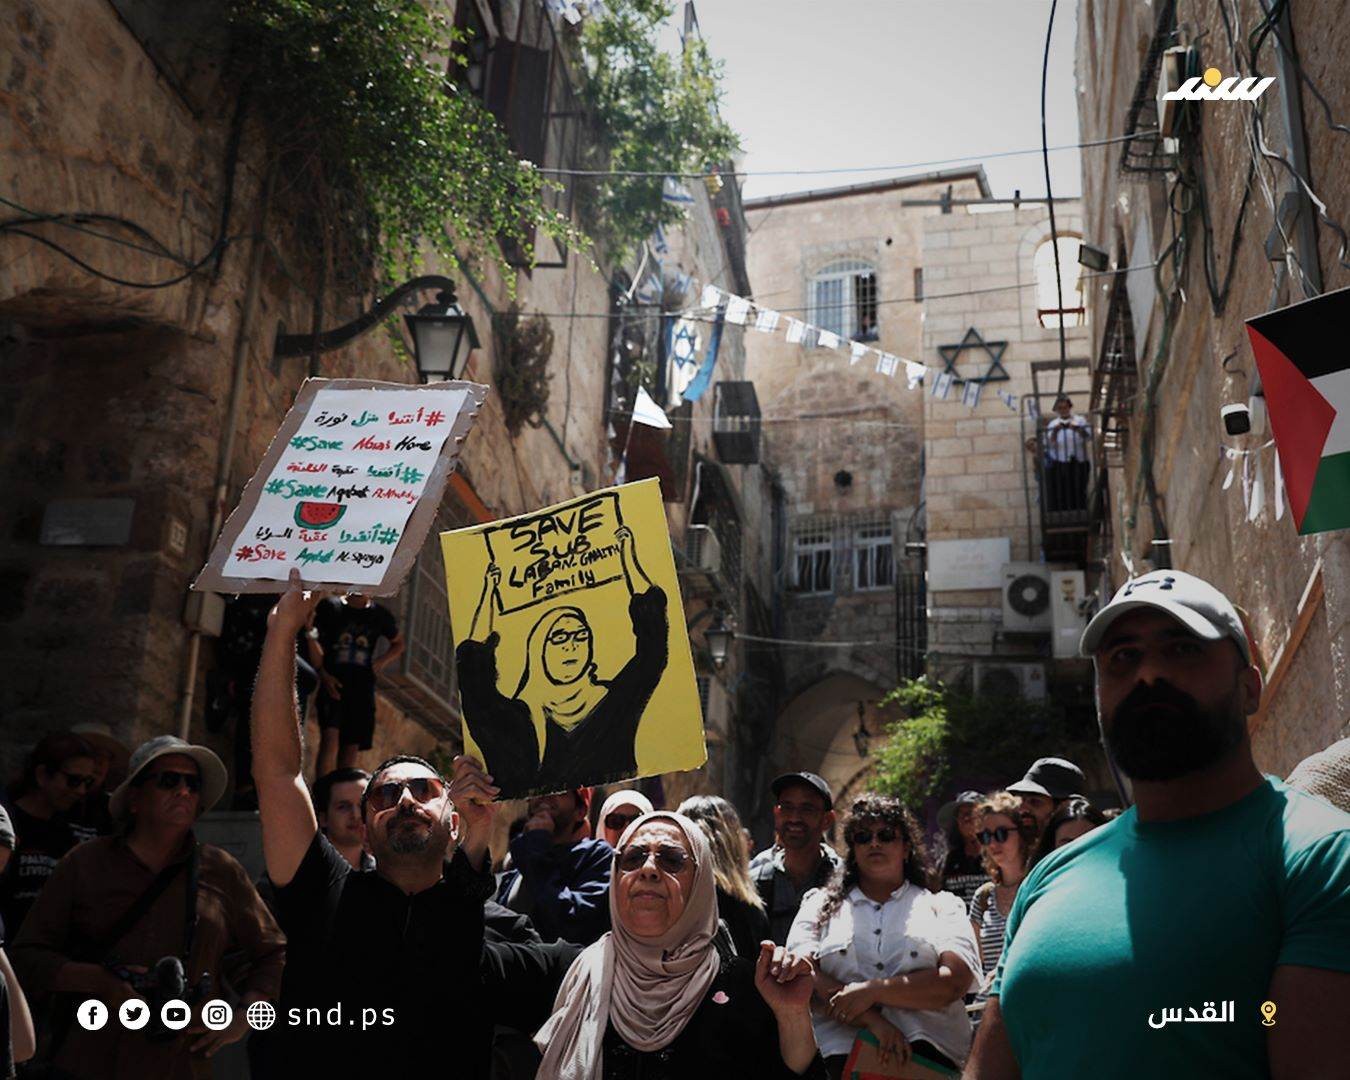 وقفة تضامنية مع عائلة صب لبن بالبلدة القديمة في القدس احتجاجا على تهجيرها قسريا من منزلها (2).jpg